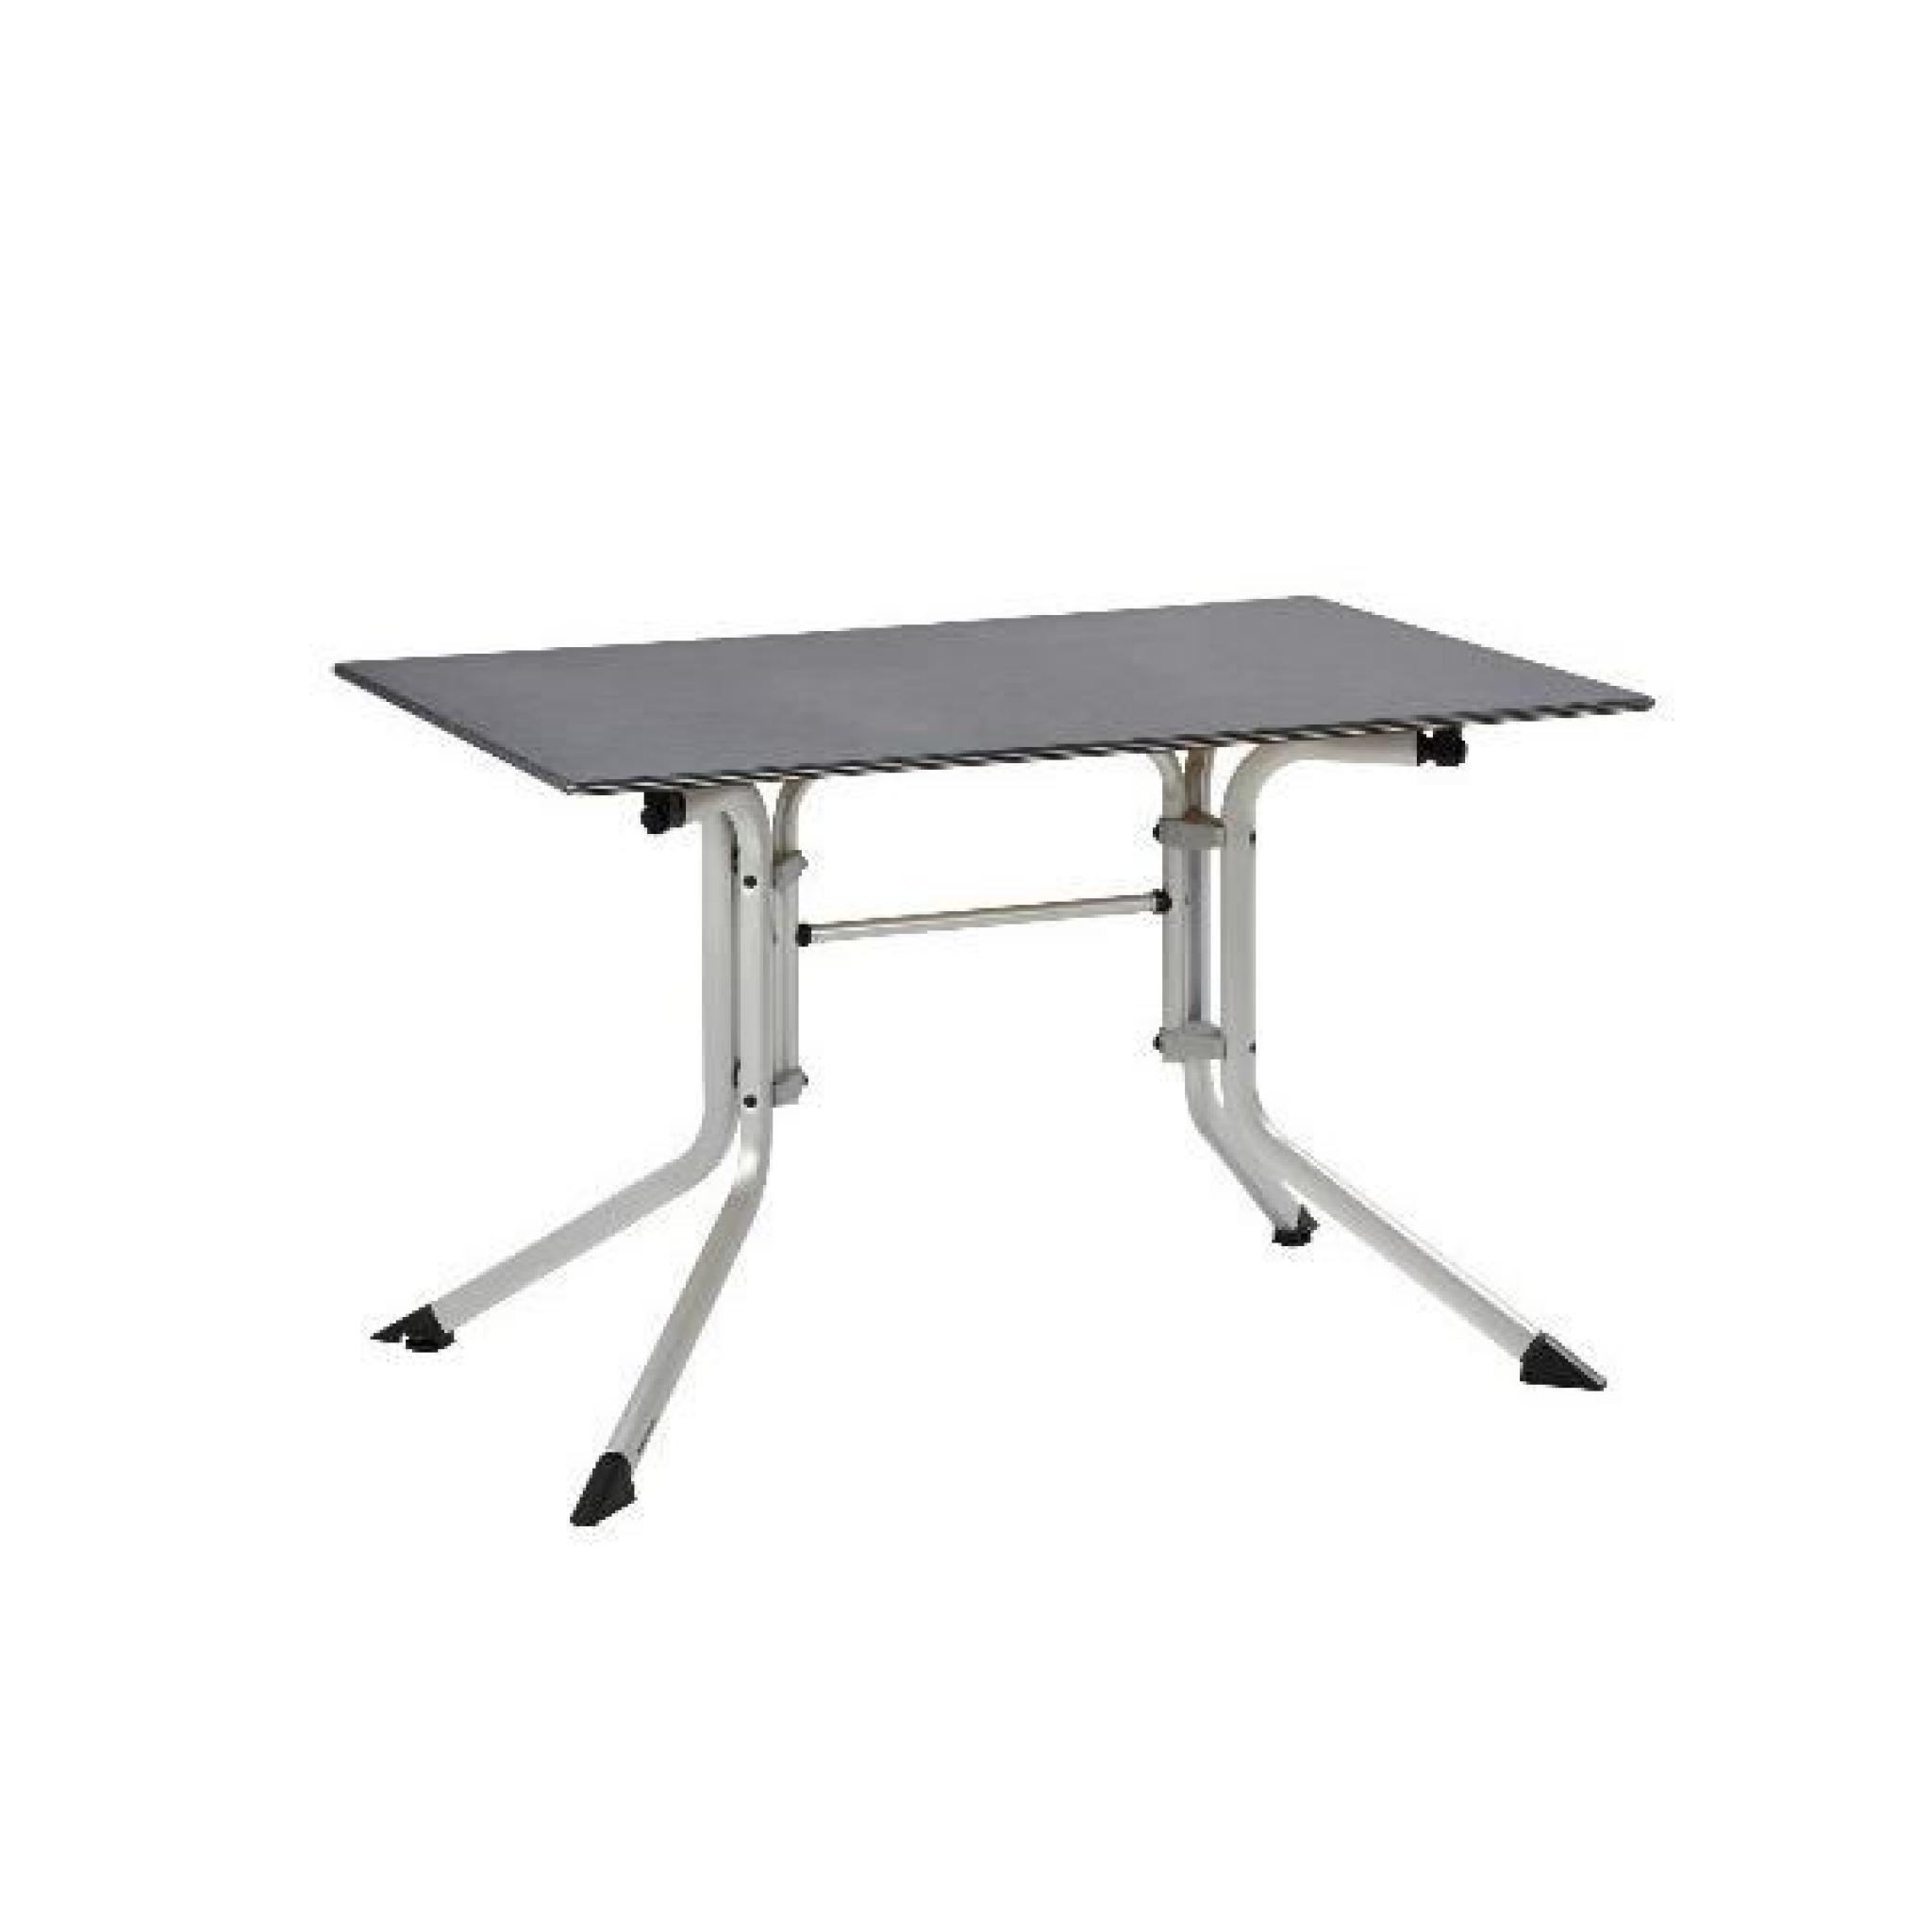 Table de jardin pliante argent/gris ADVANTAGE en aluminium - Ø 115 x H 74 cm